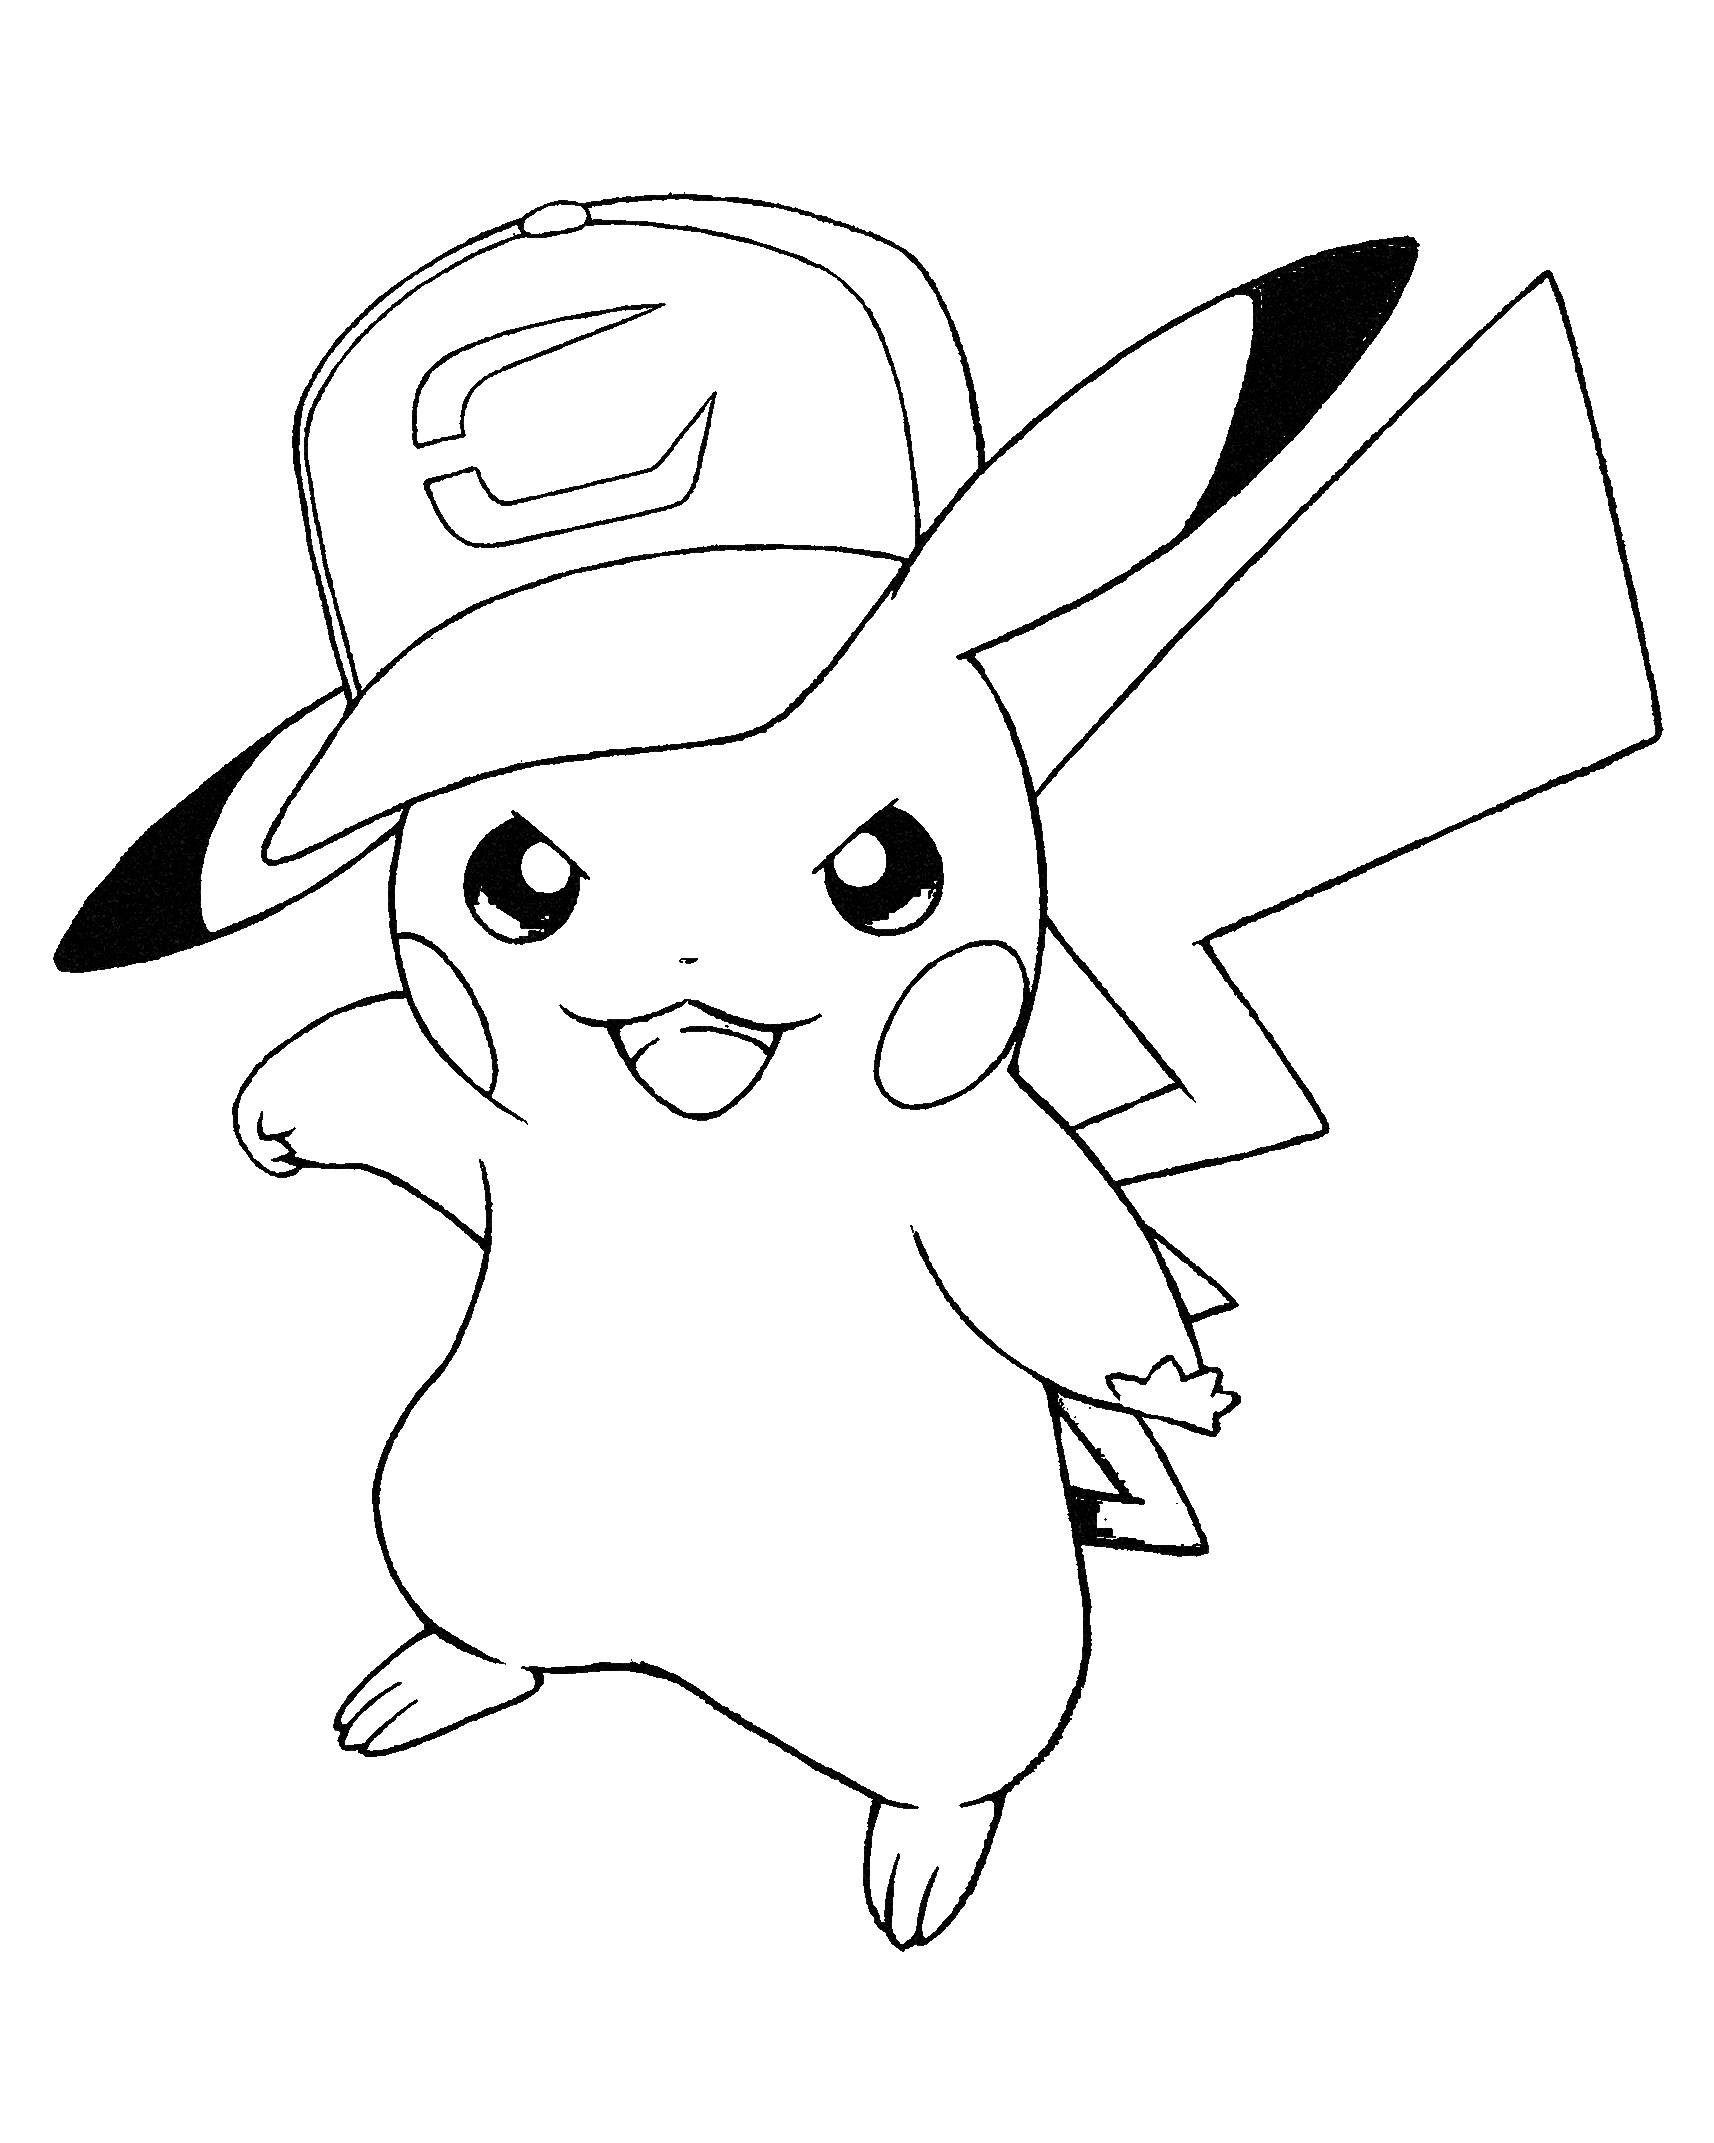 coloriage pokemon pikachu avec casquette de la catégorie coloriage pokemon